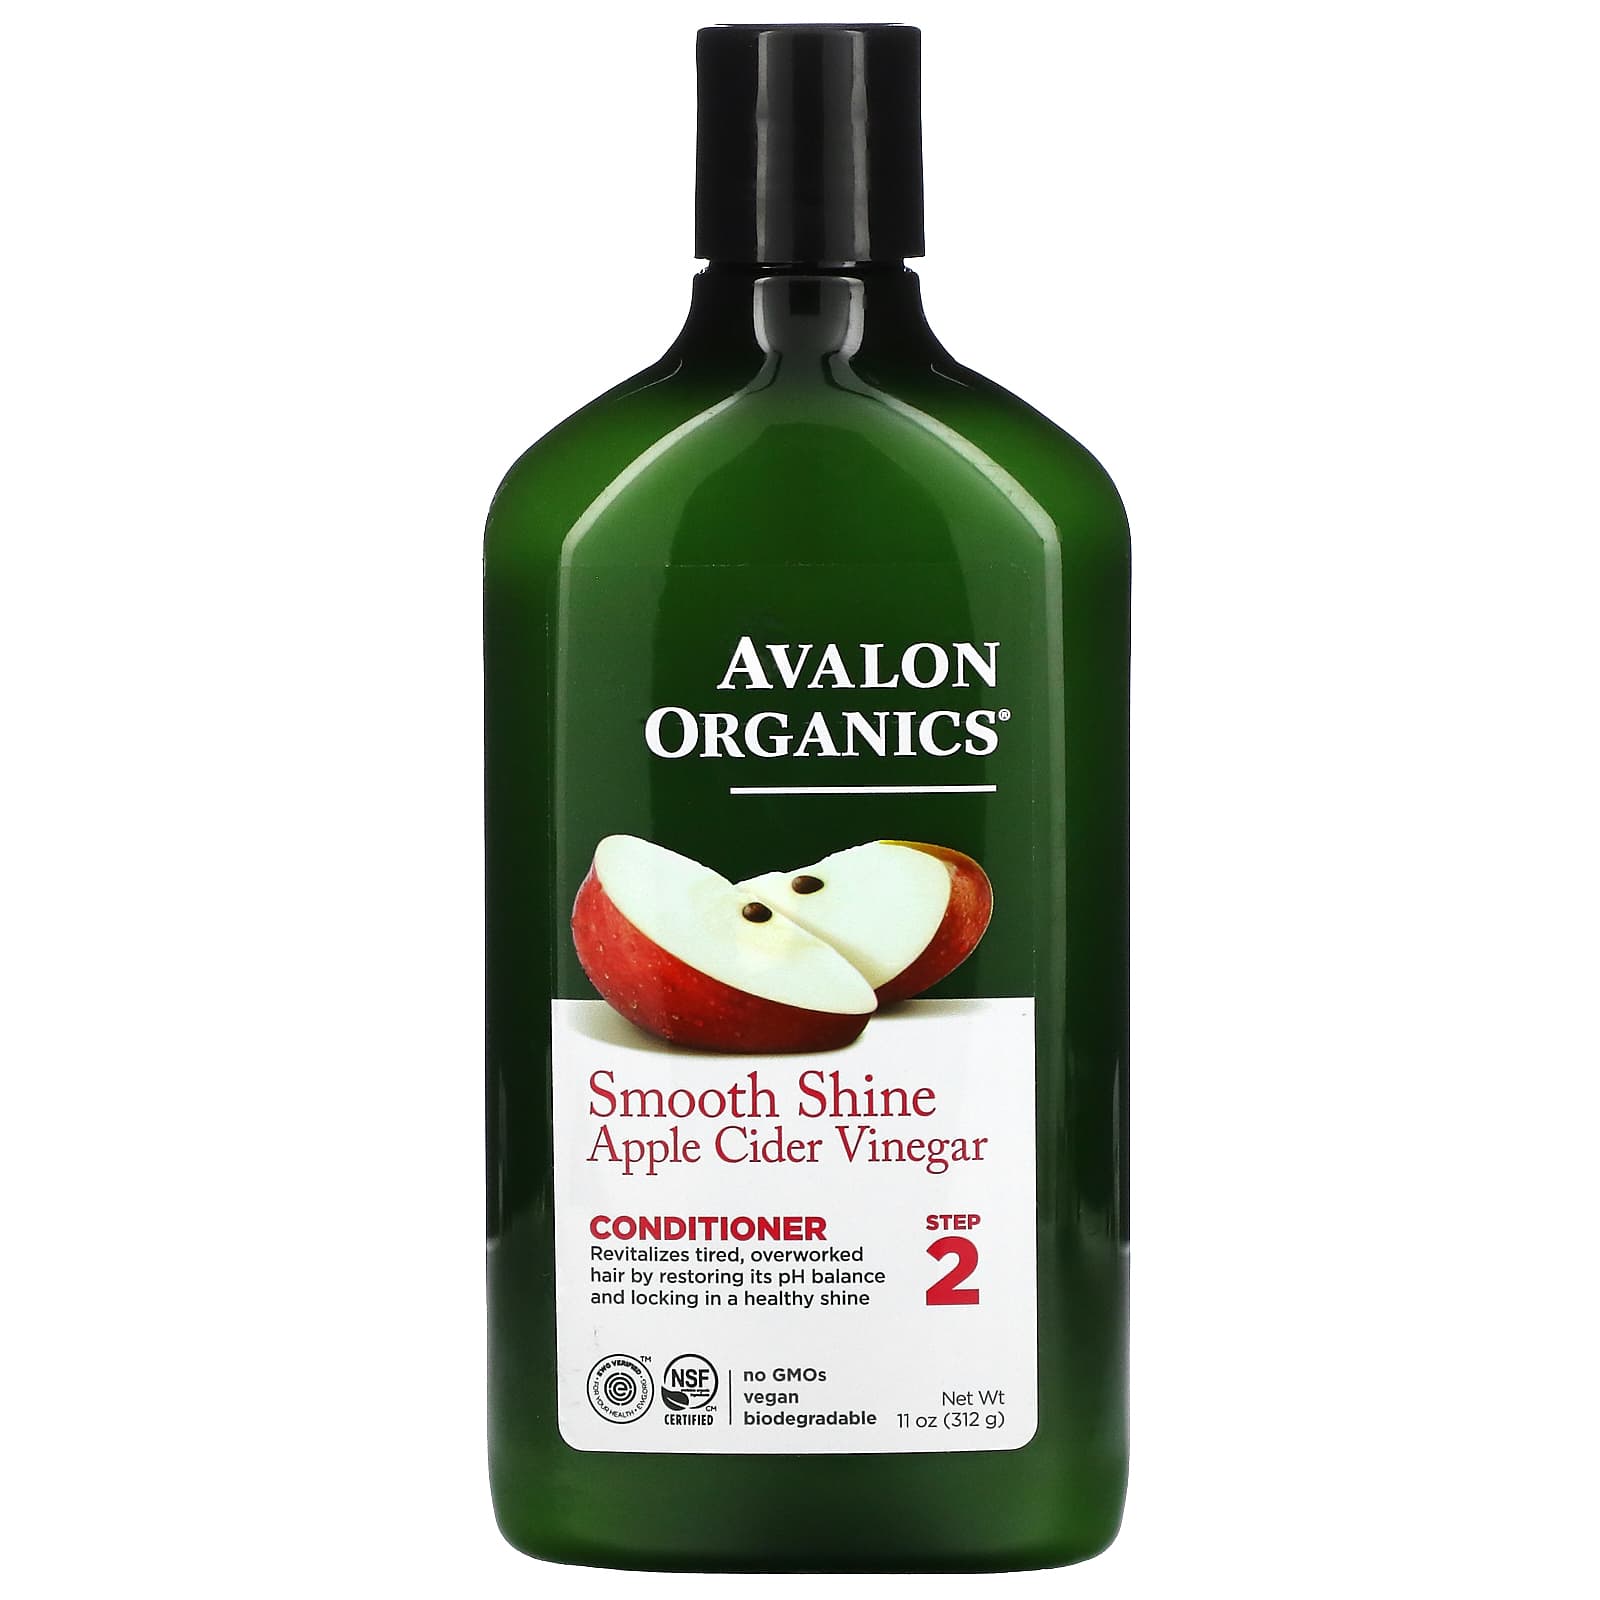 Кондиционер Avalon Organics для гладкого блеска, яблочный уксус, 312 г кассетный кондиционер carrier 42qtd060nt 38qus060nt 1 3 ph